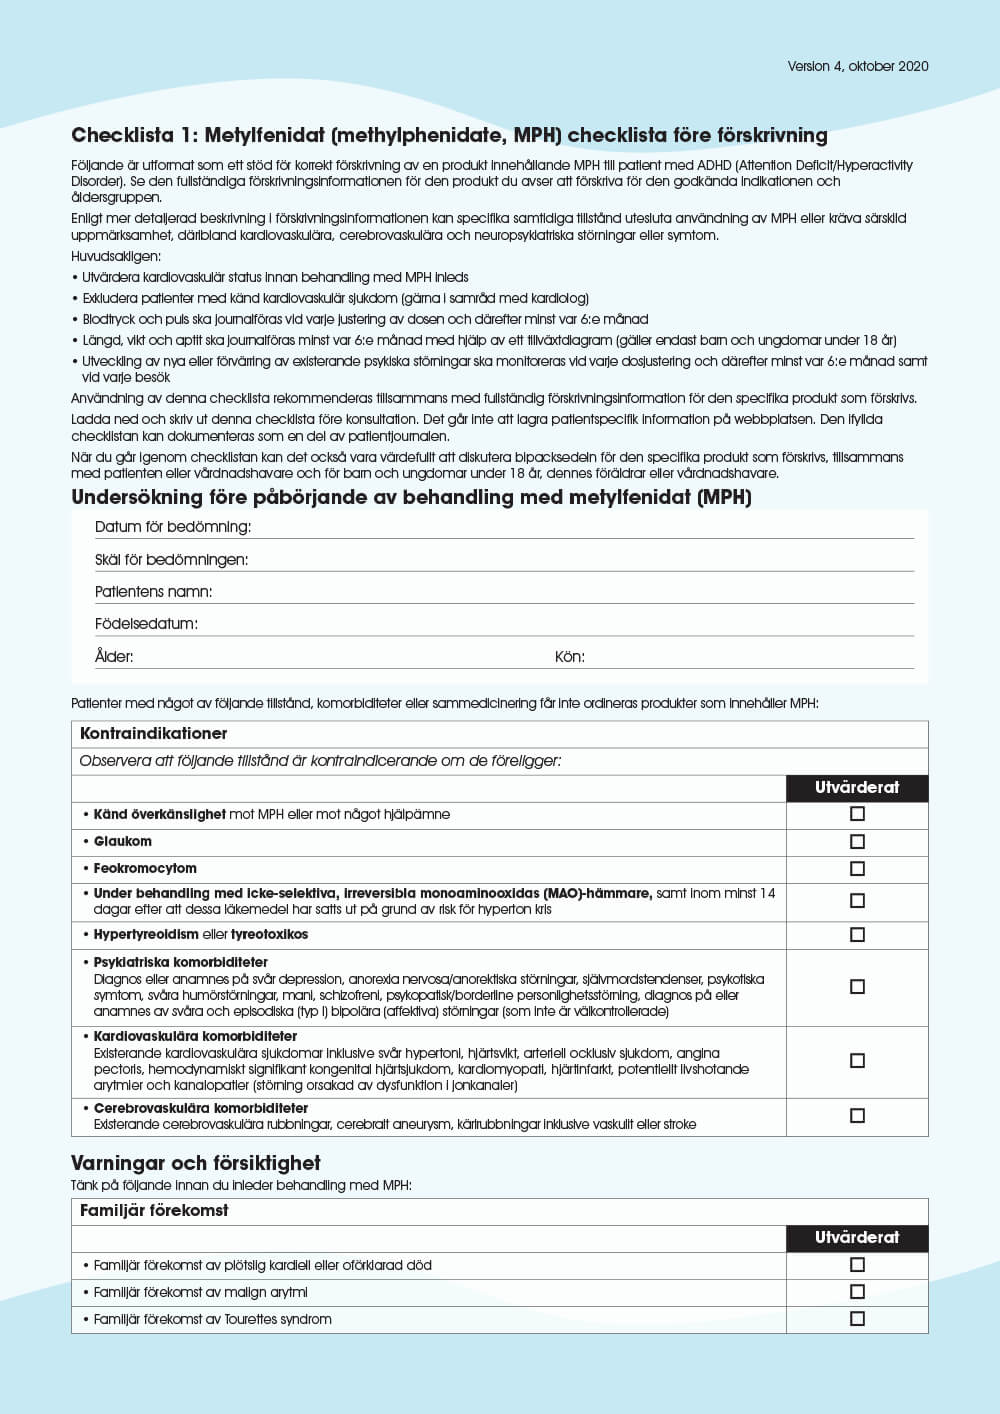 Förhandsgranska: Checklista 1: Metylfenidat (MPH) checklista före förskrivning 